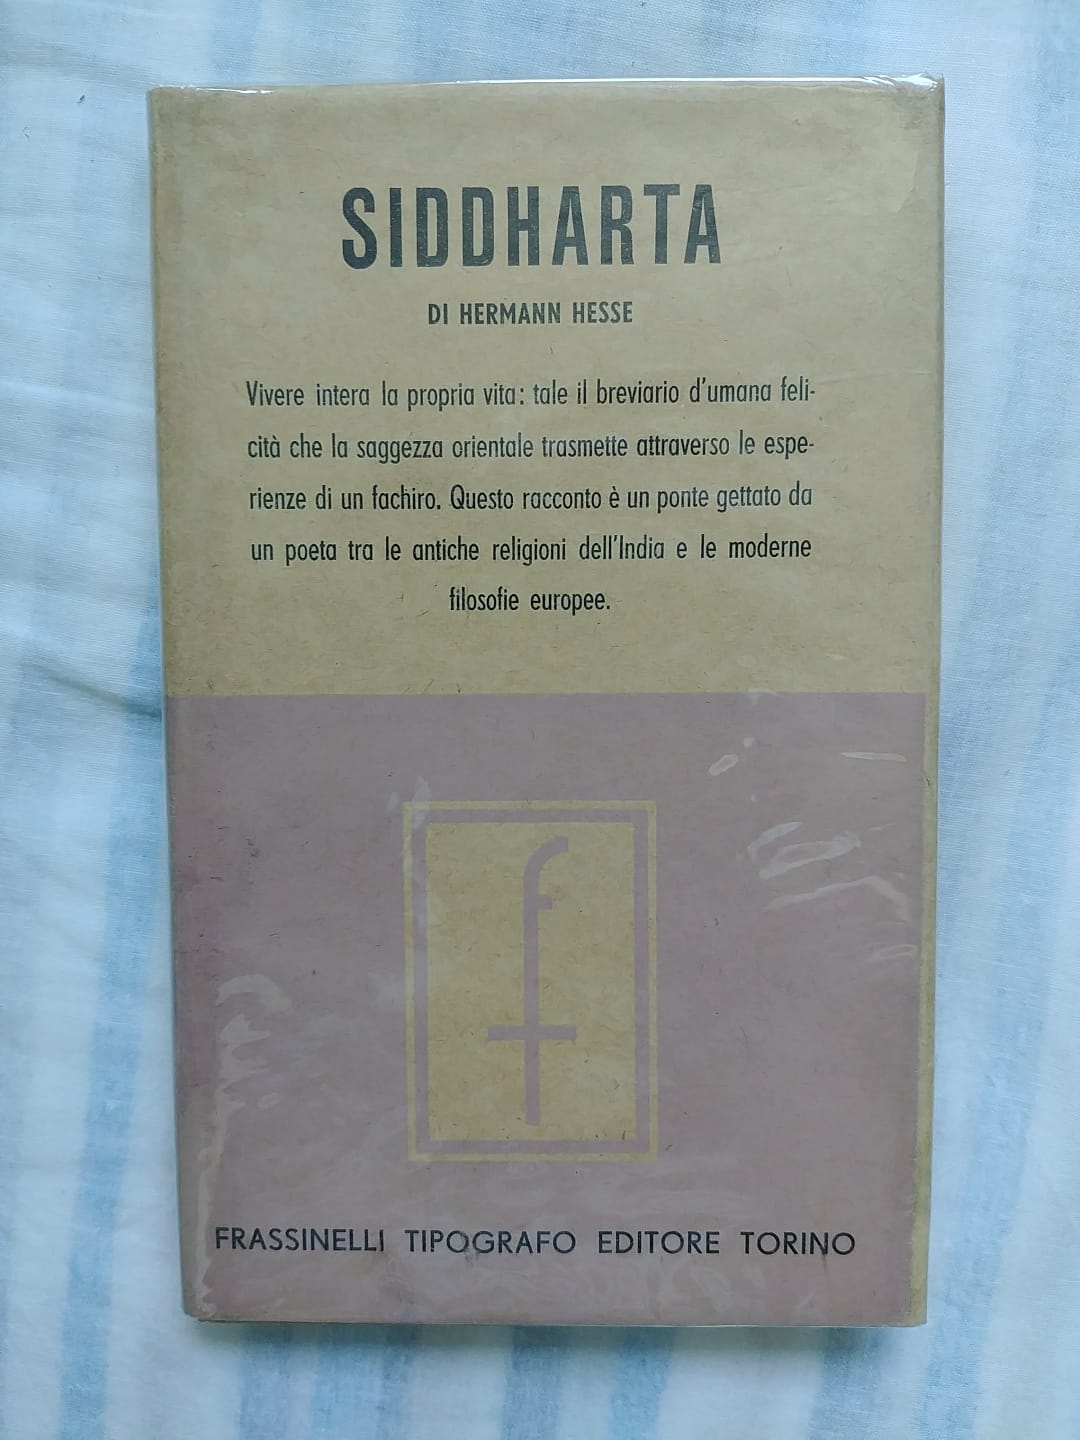 La prima edizione del “Siddharta” di Hermann Hesse con la sovraccopertina